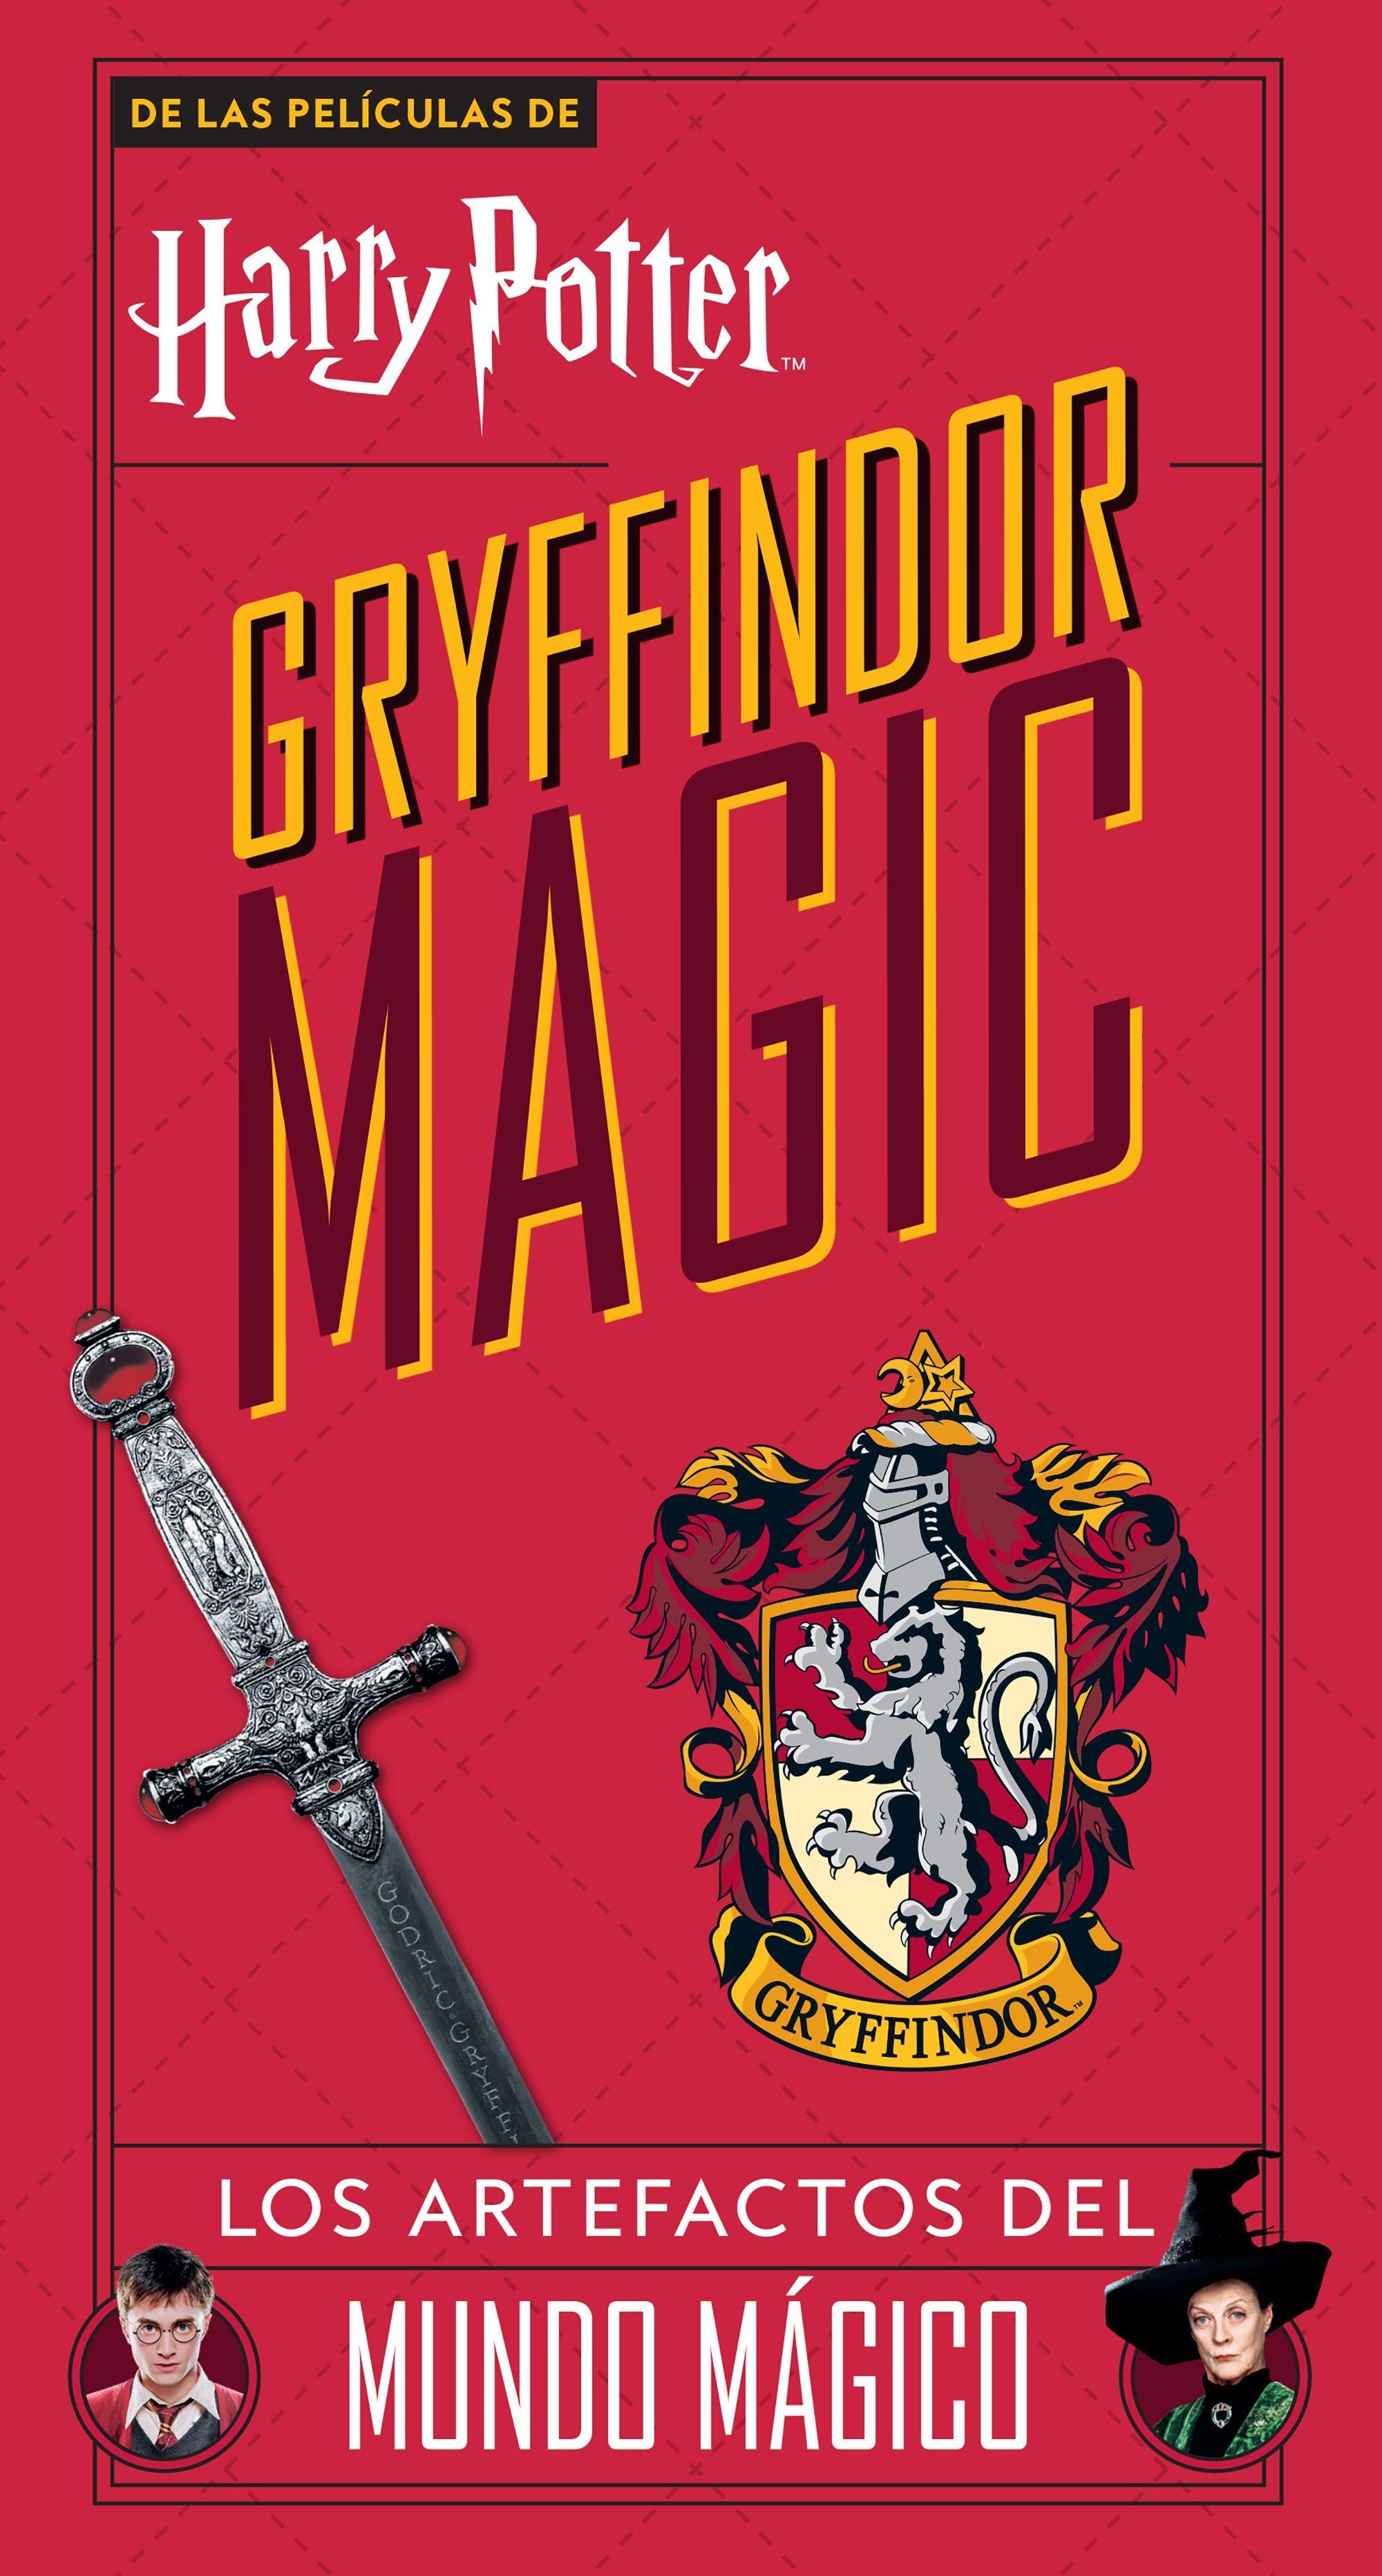 Harry Potter Gryffindor Magic "Los Artefactos del Mundo Mágico"